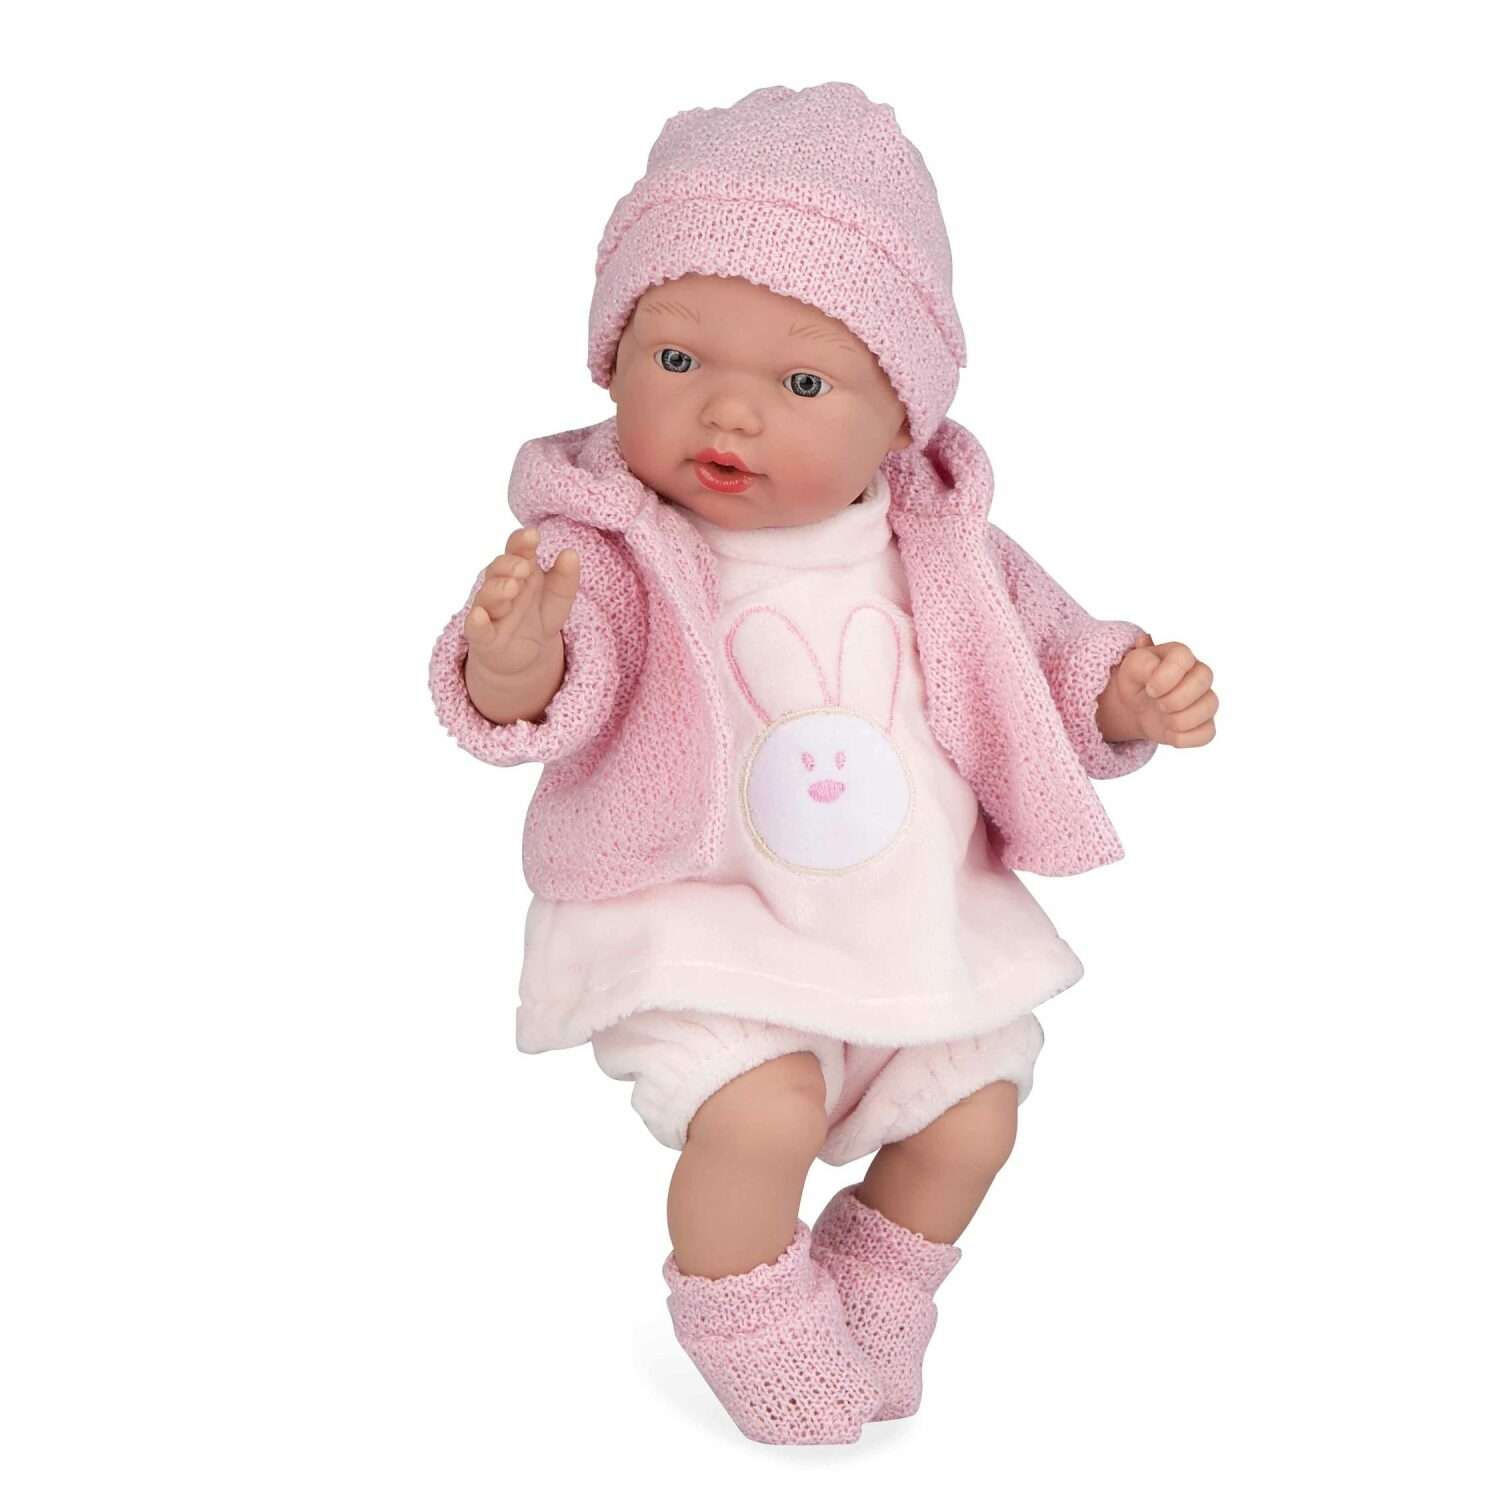 Кукла Arias Elegance hanne 28 см в розовой одежде Т22017 - фото 1